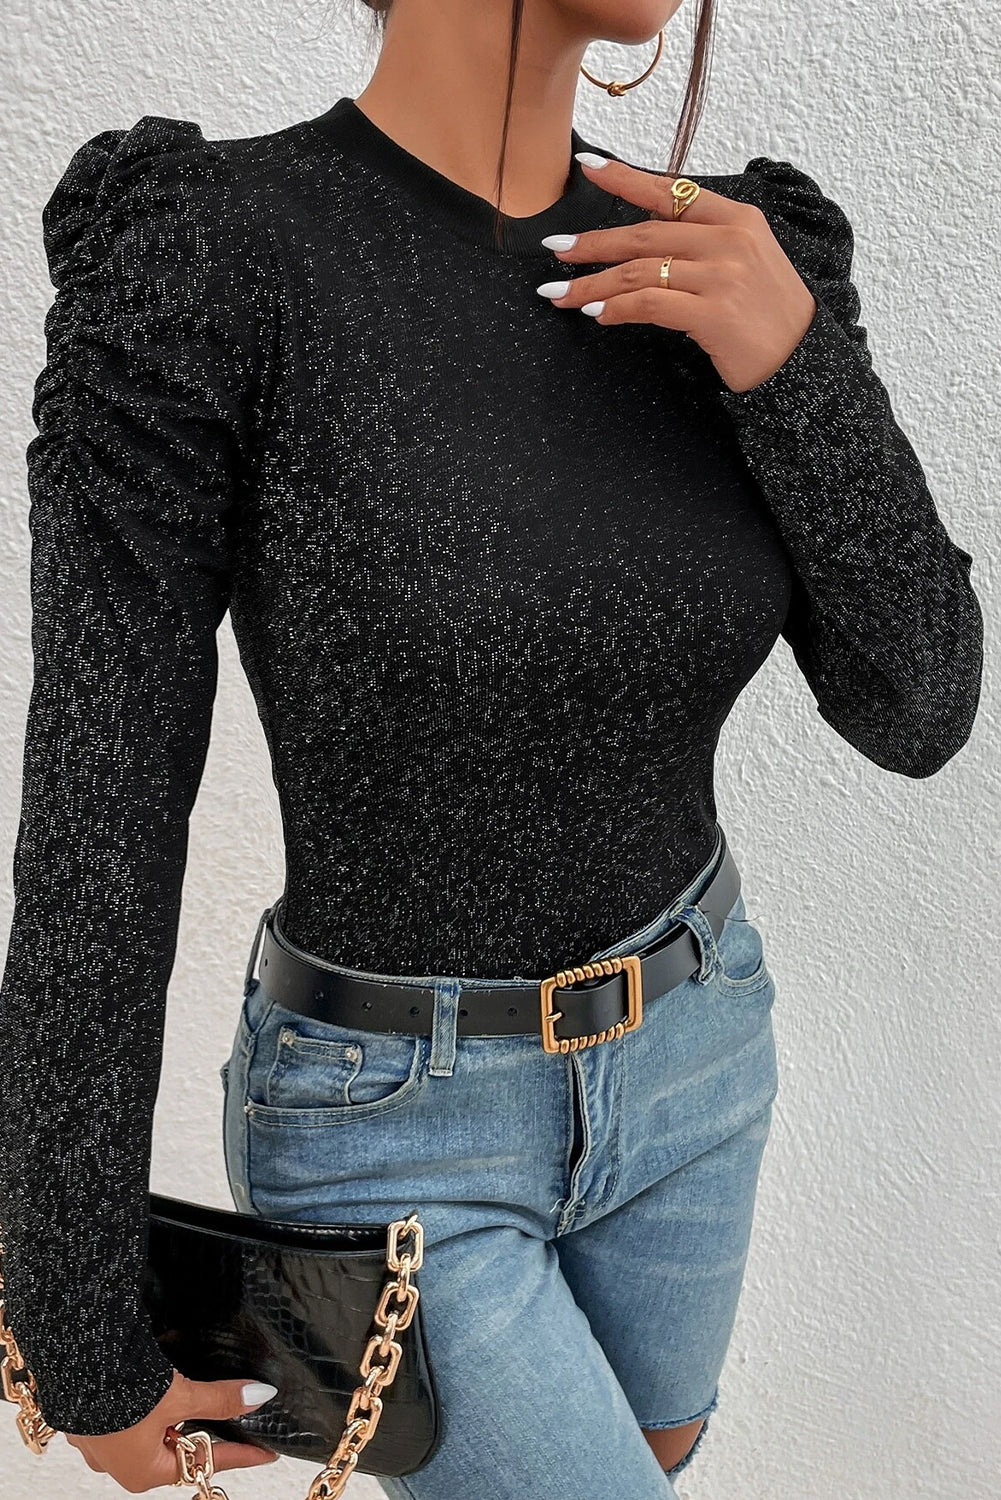 Crna majica uskog kroja s metalnim pletenim rukavima